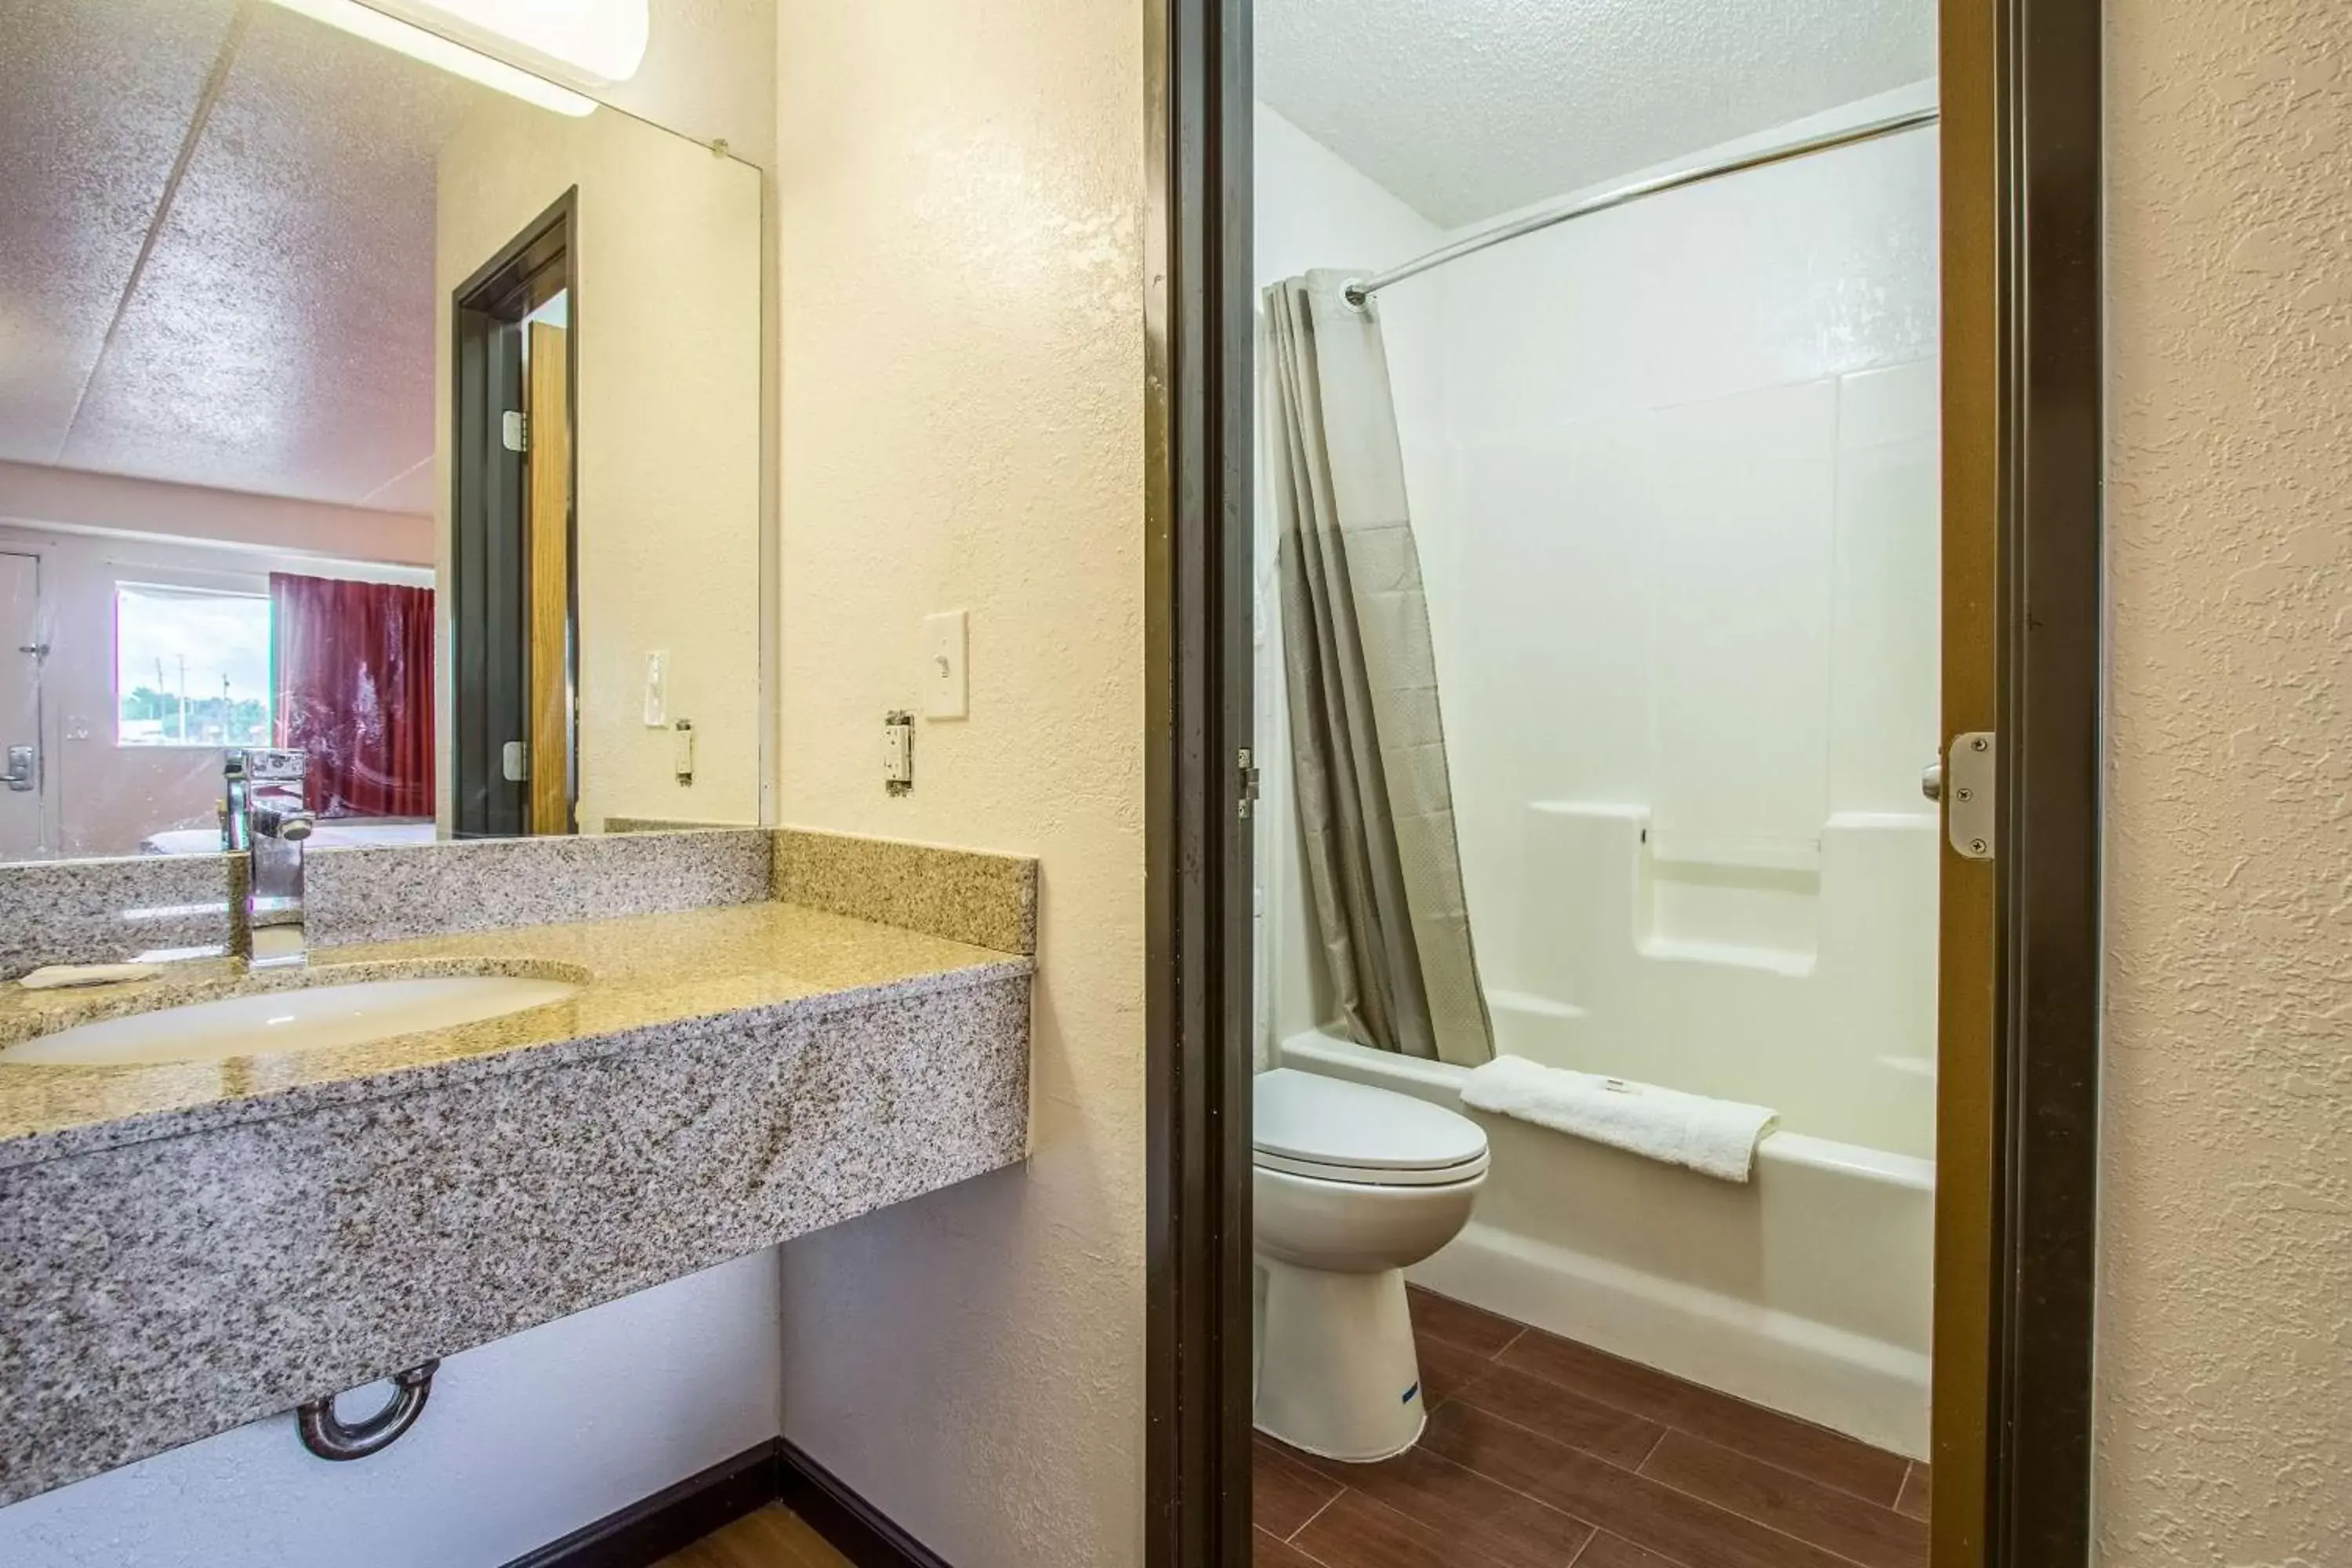 Toilet, Bathroom in Motel 6-Ashland, OH